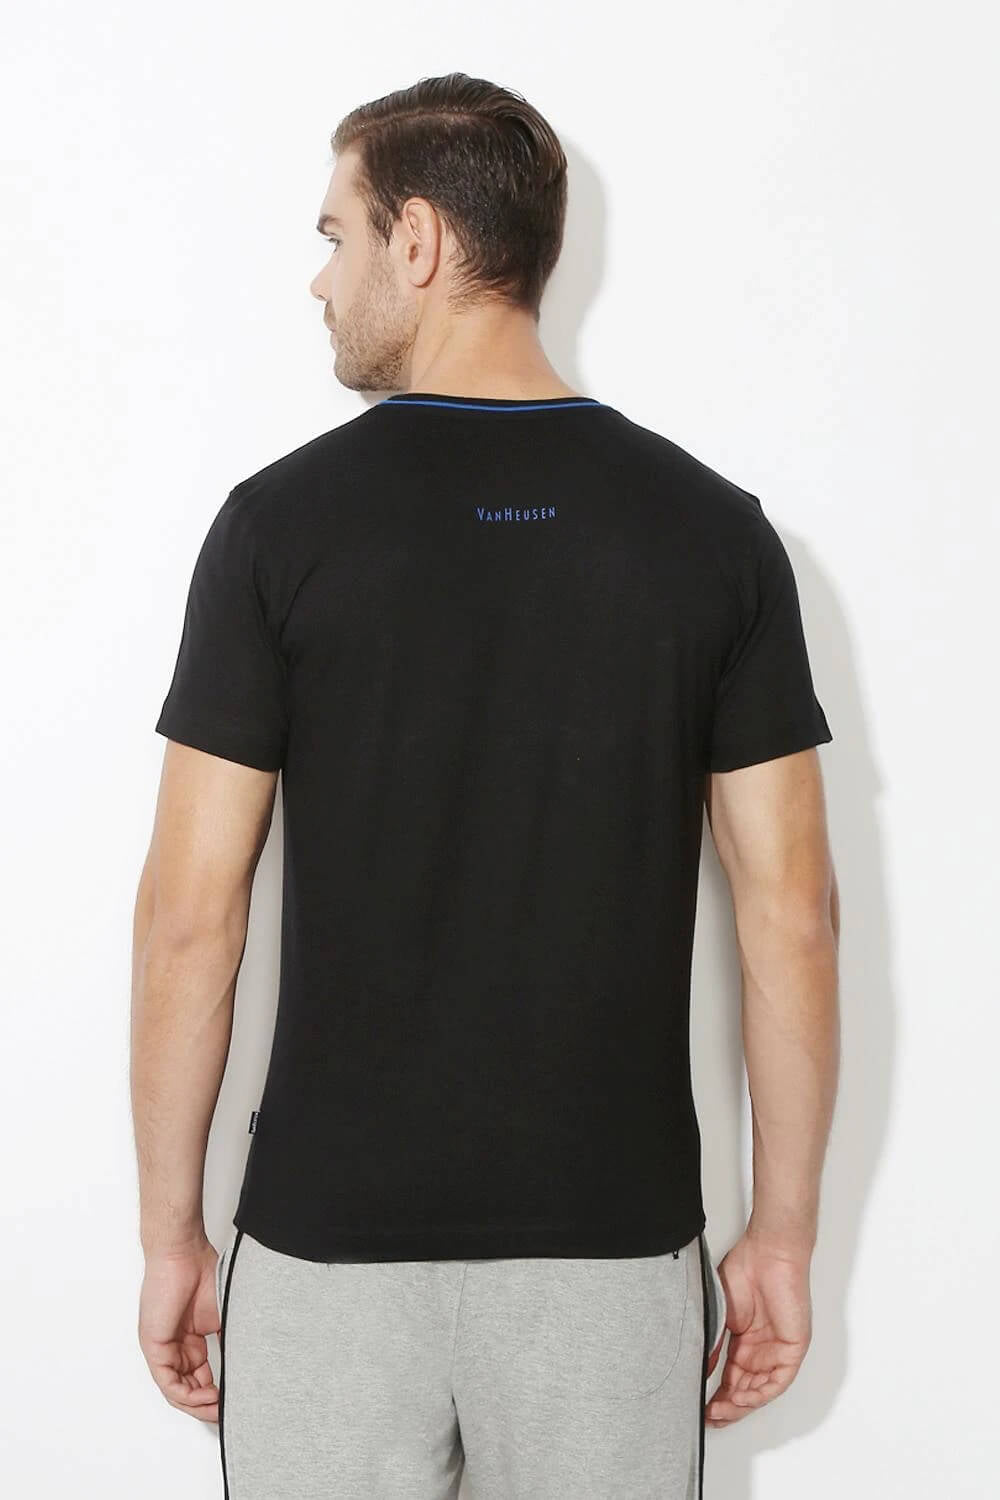 Van Heusen Black Tshirt for Men #60021